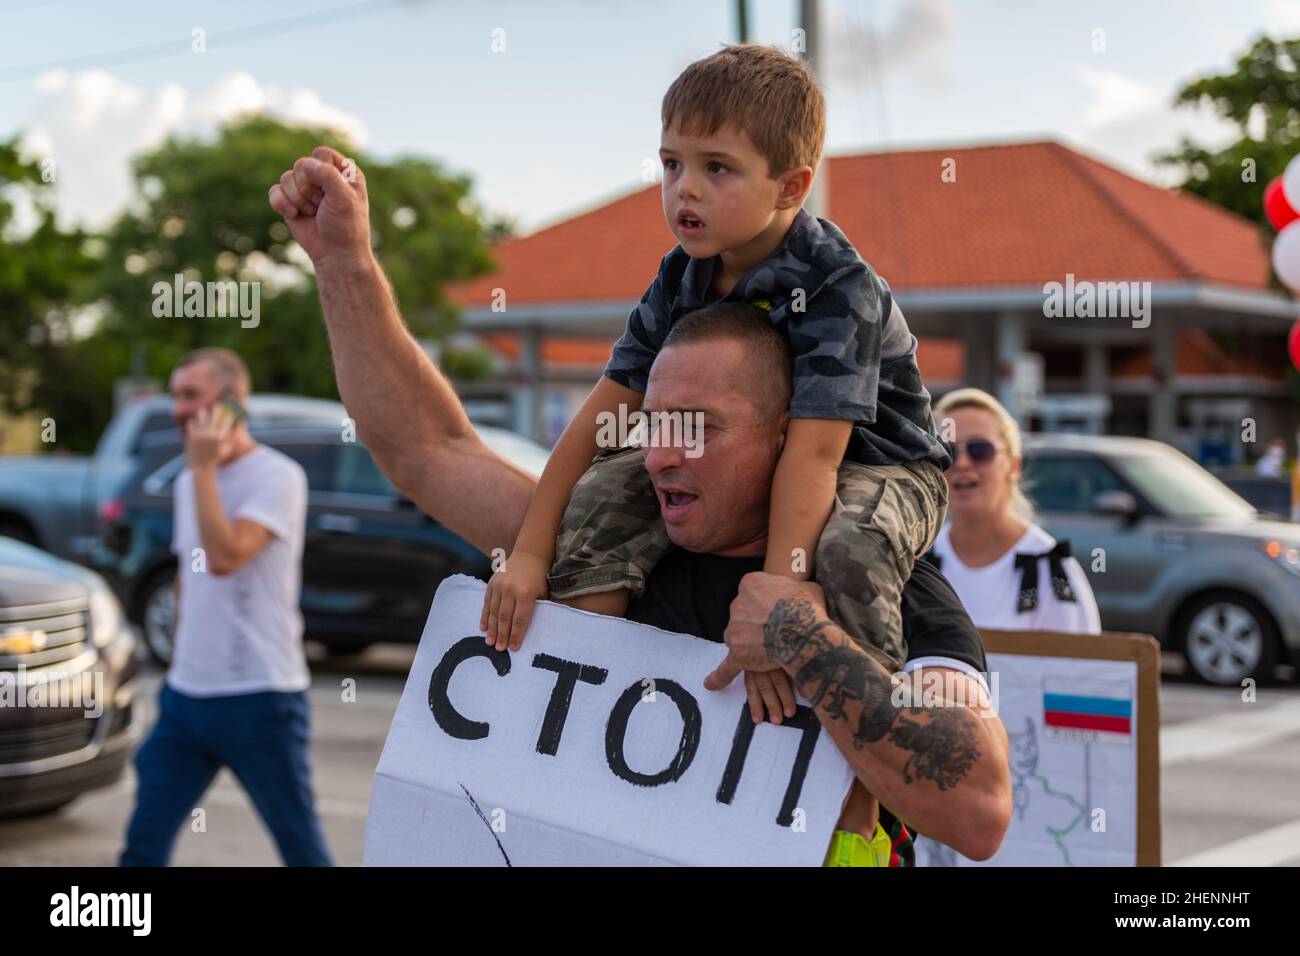 Biélorussie des personnes lors d'une manifestation contre Loukachenko en Floride, Etats-Unis.Signe pour une élection équitable, la liberté des prisonniers politiques au Bélarus.Manifestants. Banque D'Images